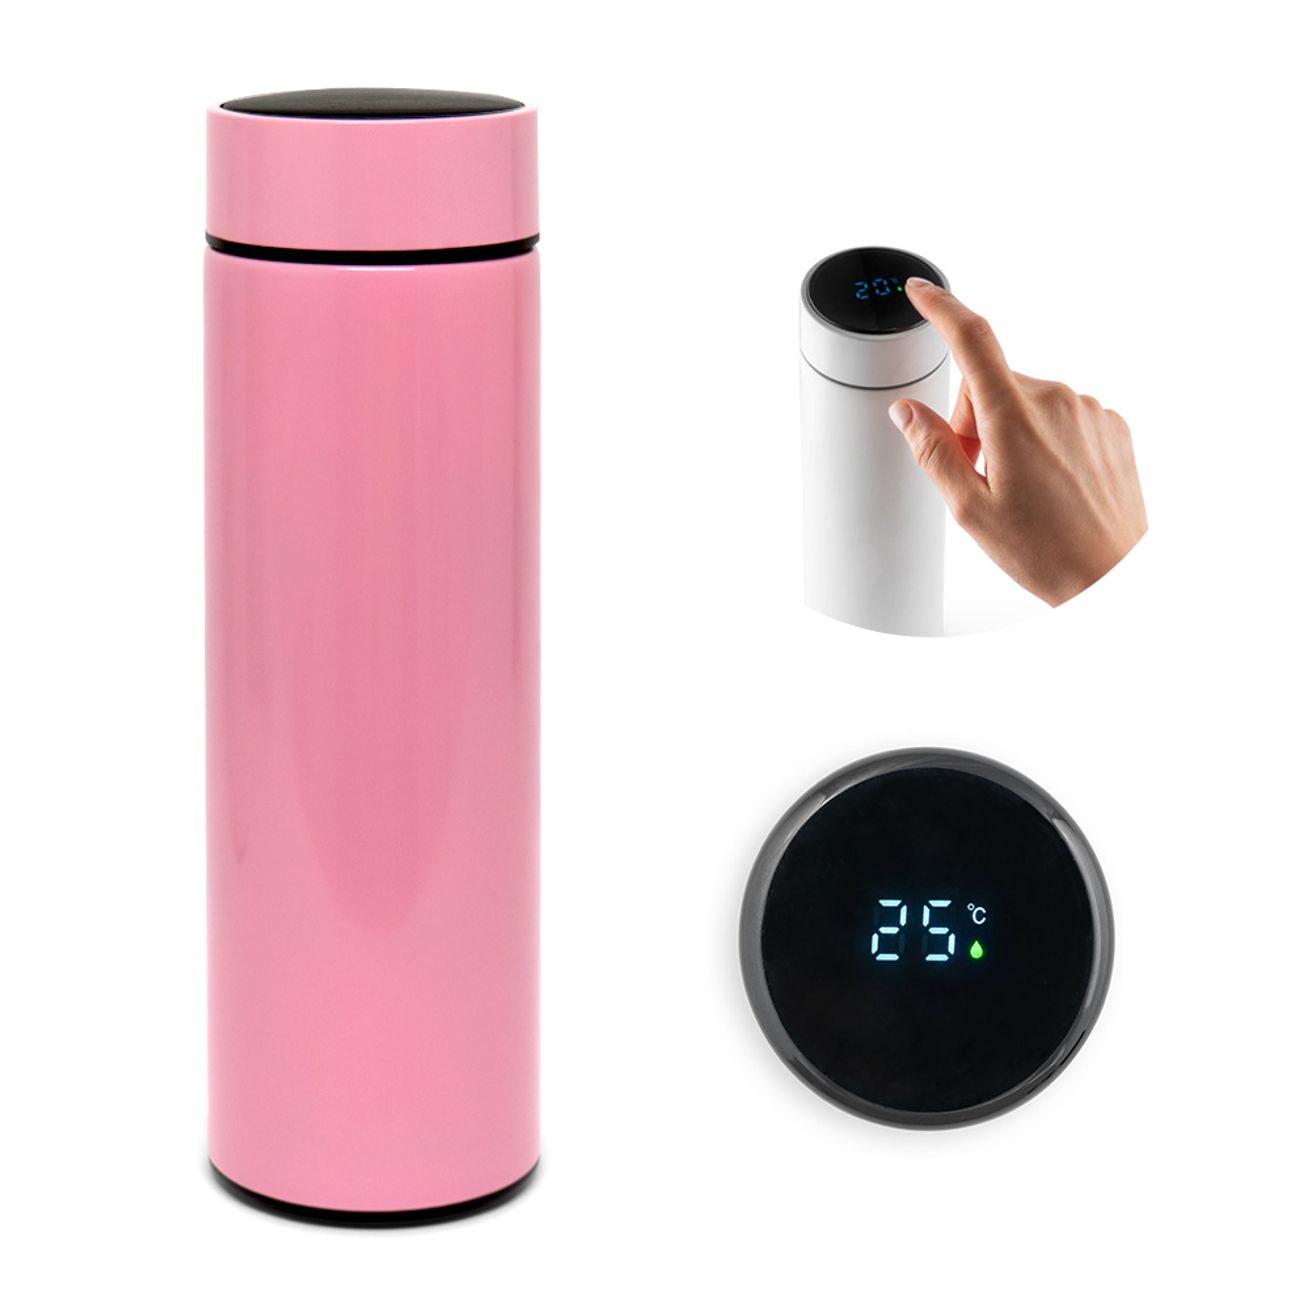 Garrafa Térmica Inox com Sensor Digital de Temperatura Rosa Brilho